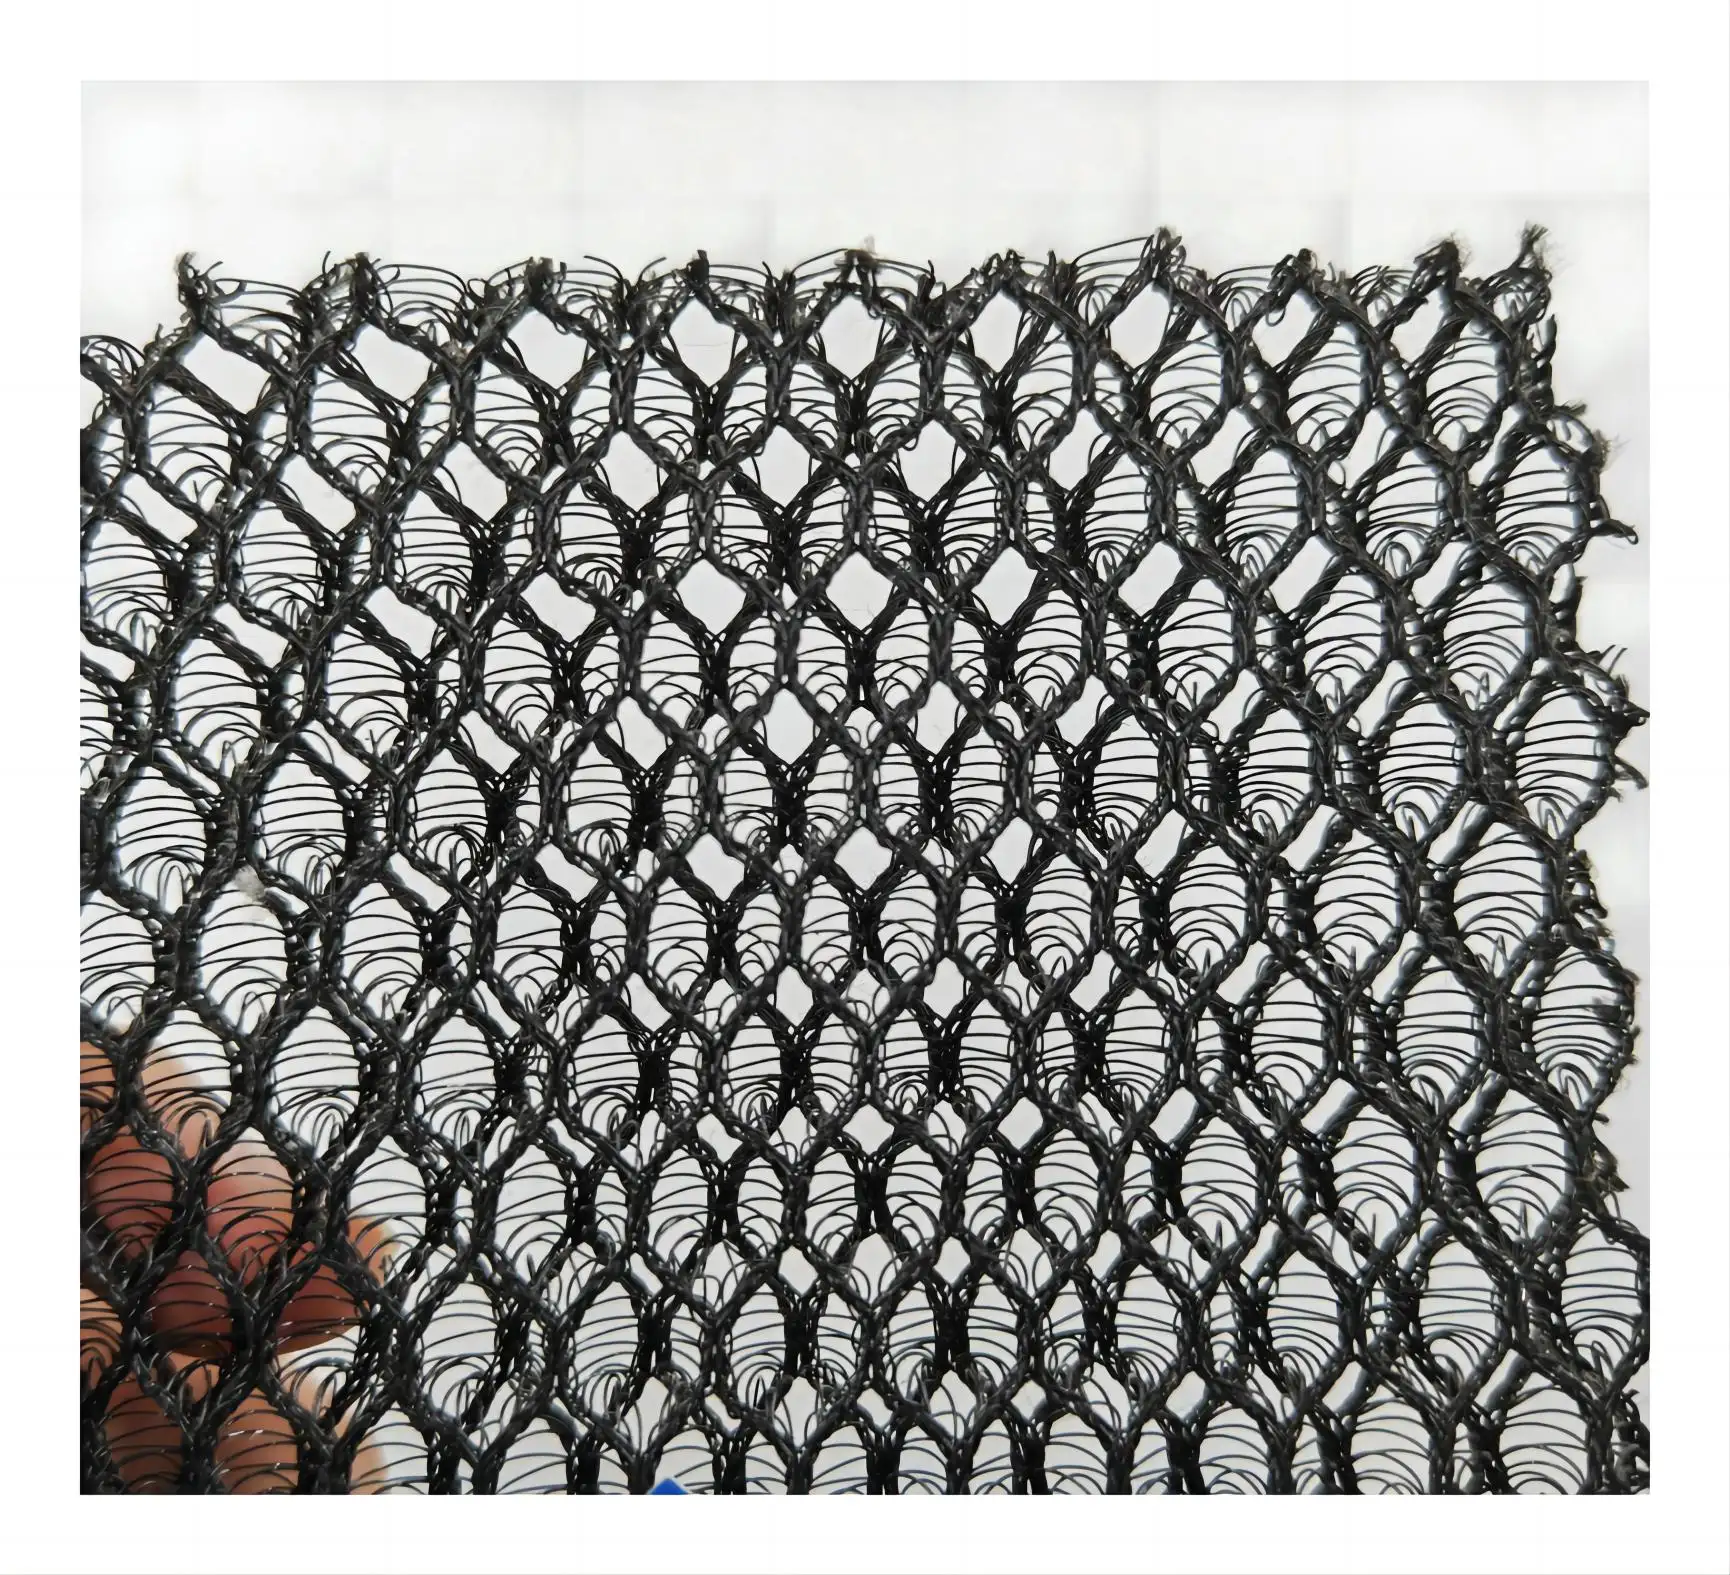 100% Polyester Spacer không khí lưới lục giác lưới vải 3D Tricot 100% Polyester dệt kim lưới vải cho bãi biển ghế trọng lượng trung bình